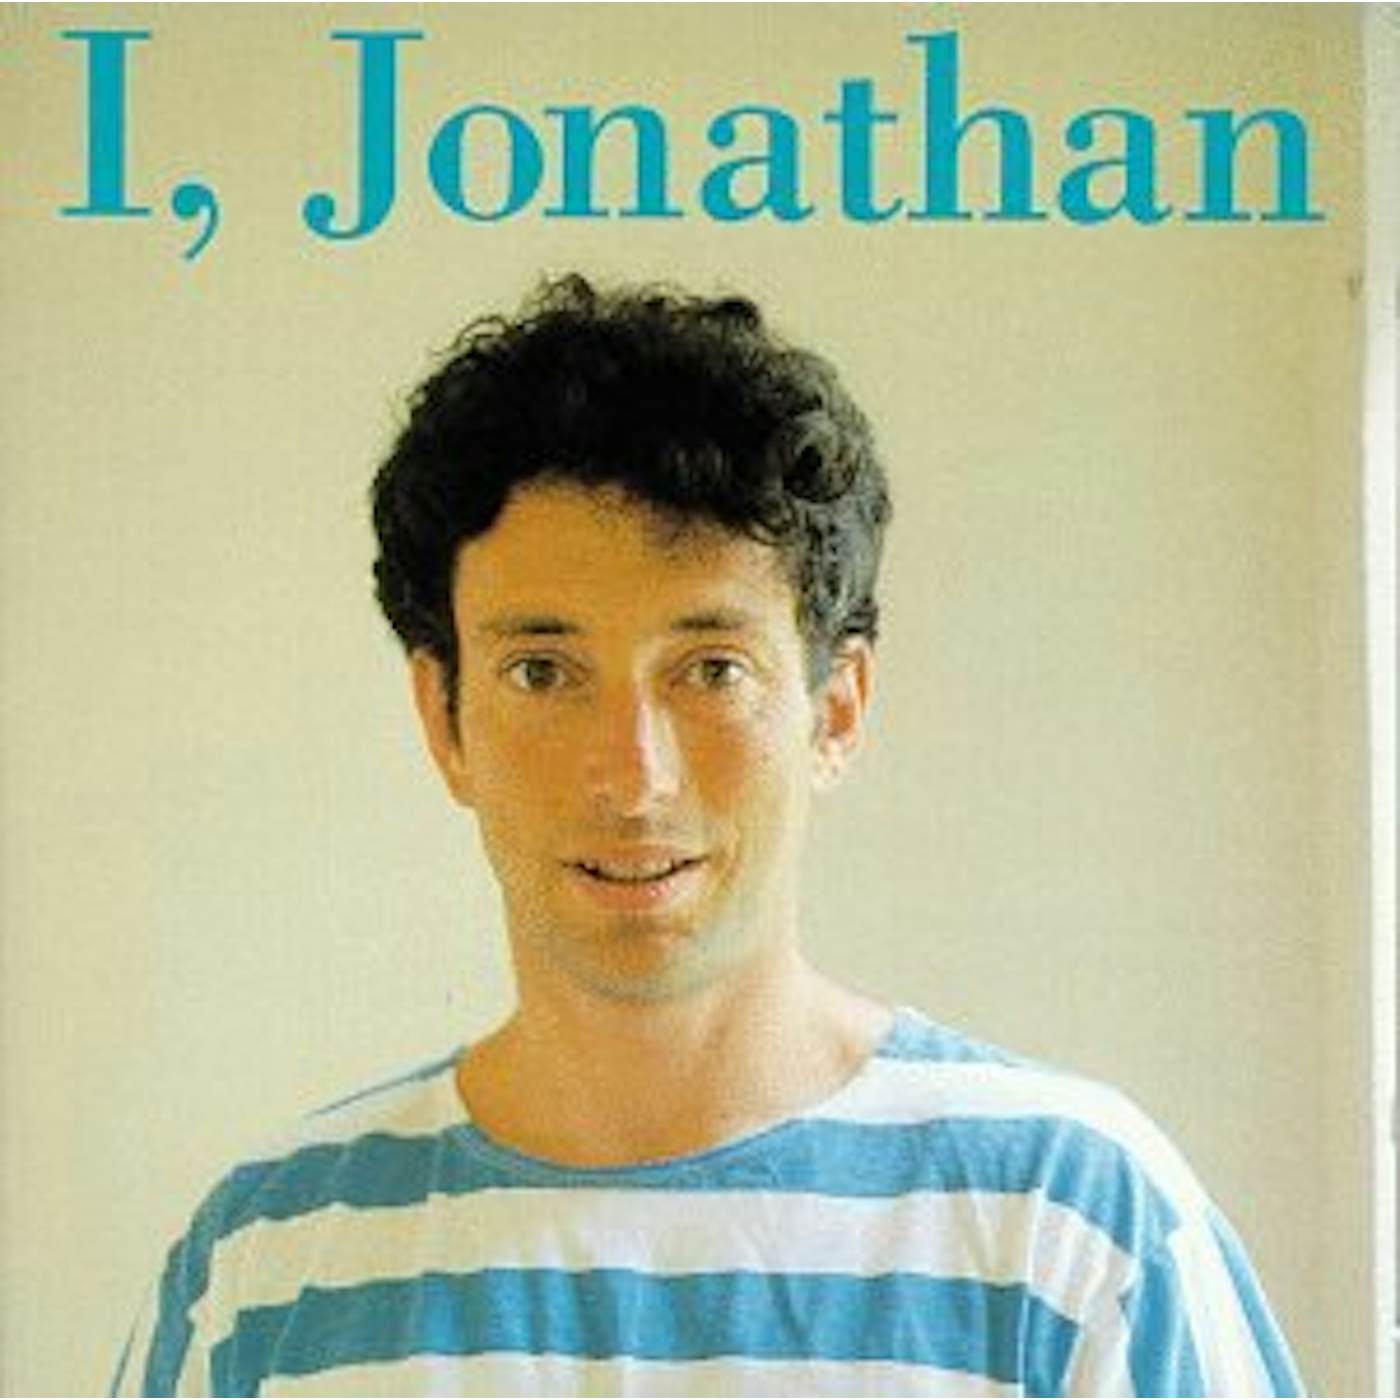 Jonathan Richman I JONATHAN CD